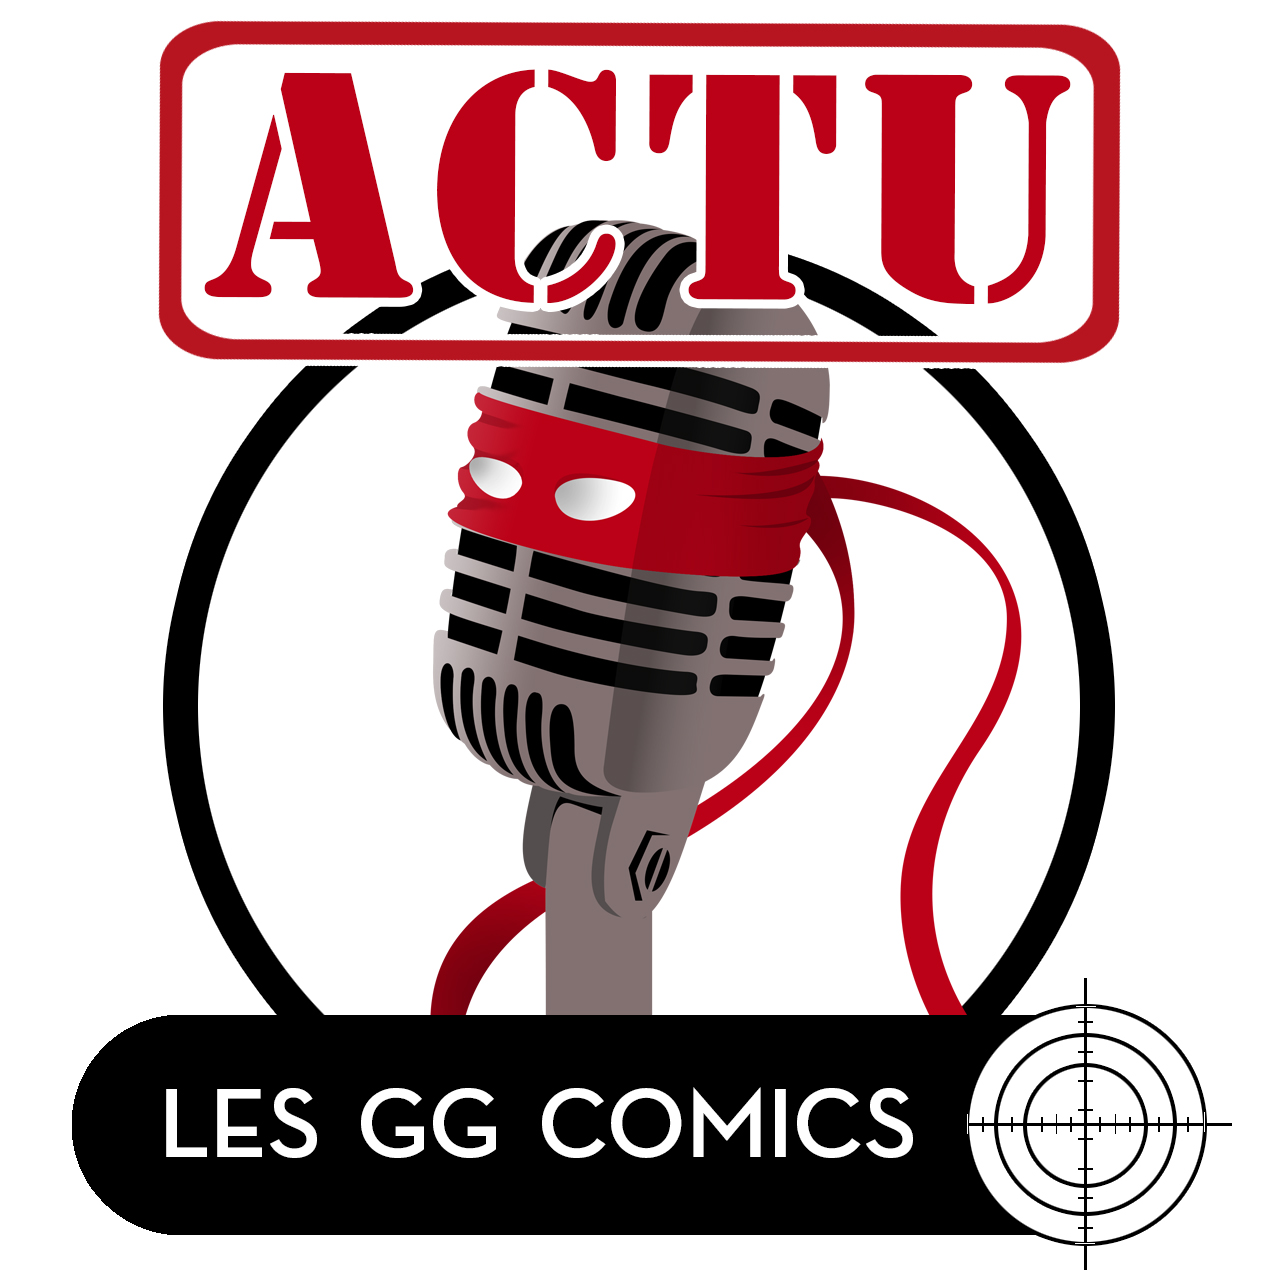 Les GG comics Actu #1 : En toute franchise !